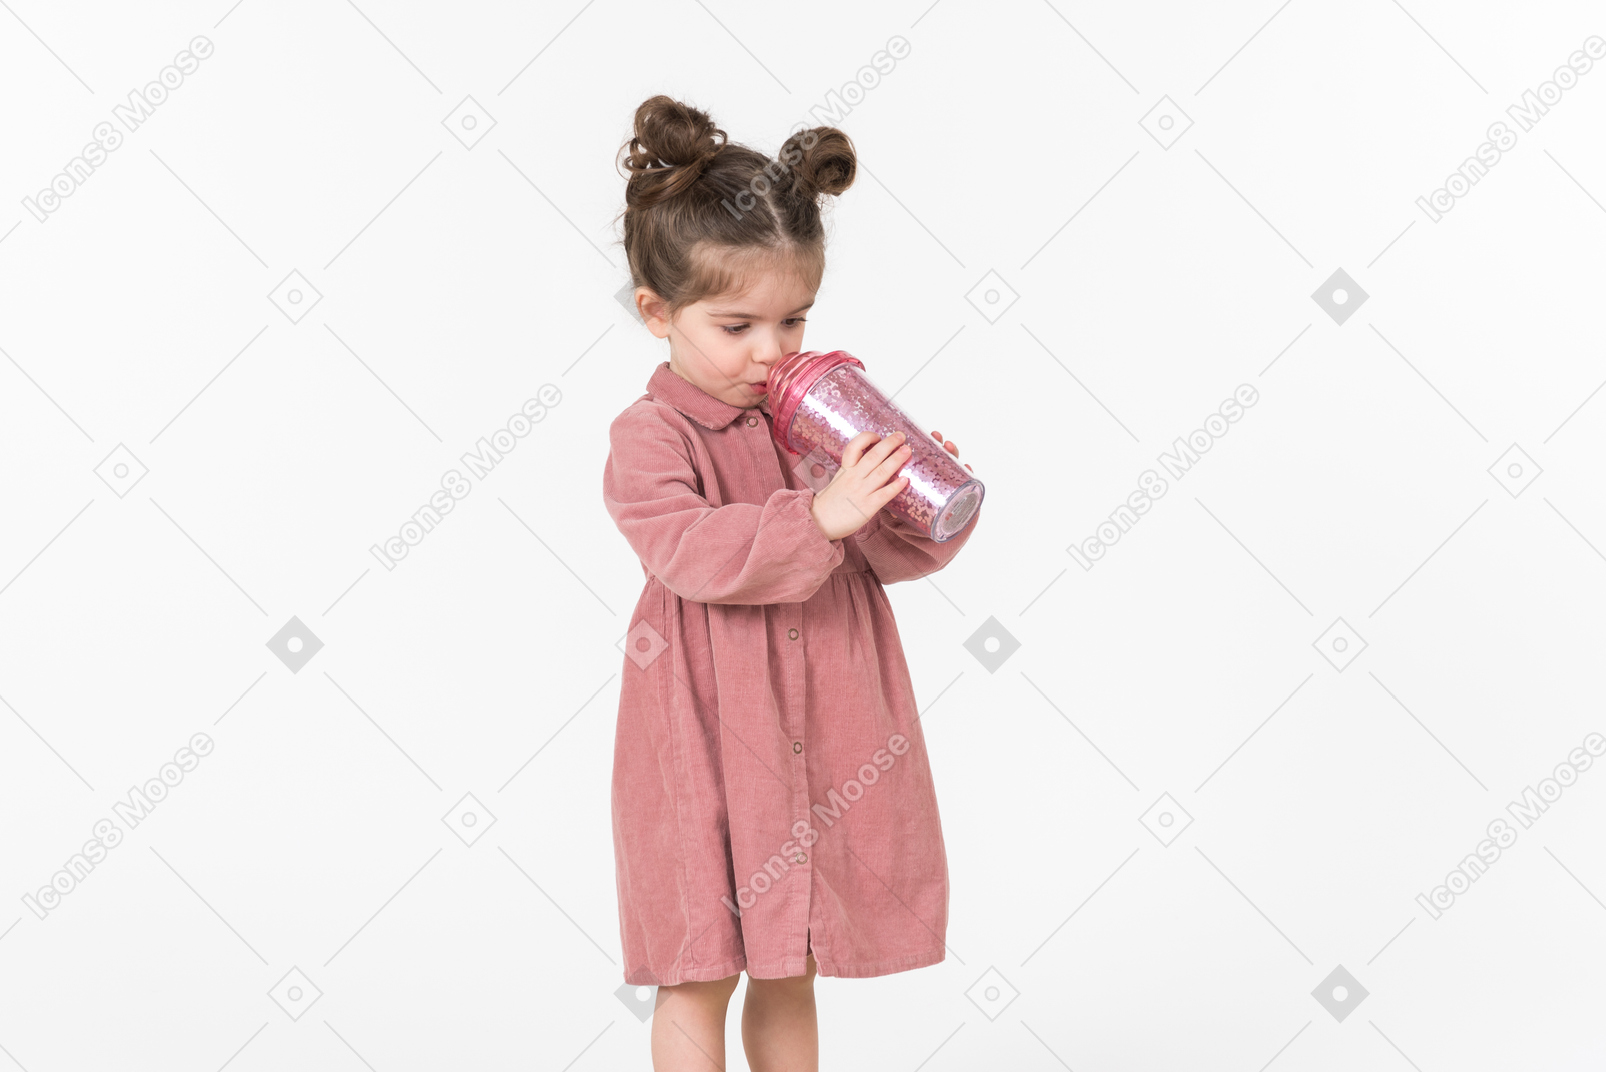 Kleines kind mädchen aus dem rosa plastikbecher trinken